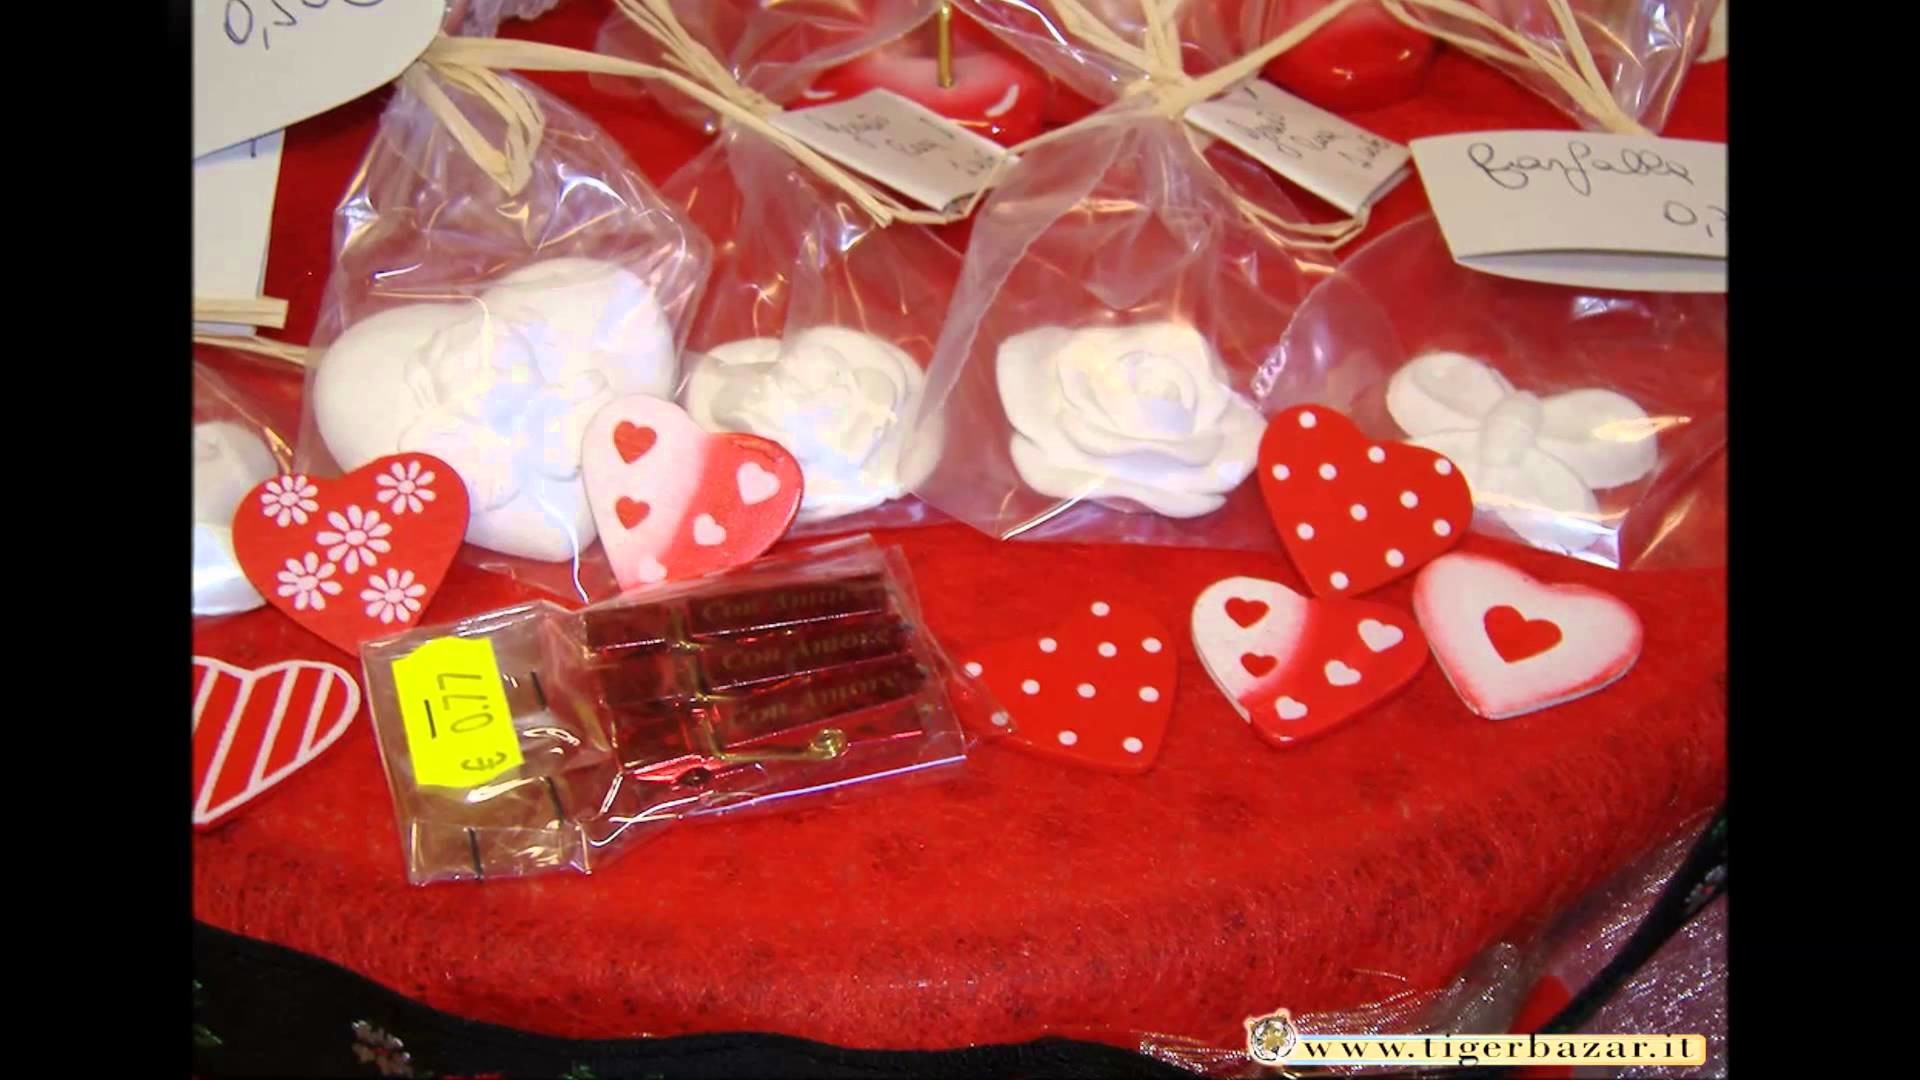 San Valentino: un cuoricino e un'idea regalo o bomboniere